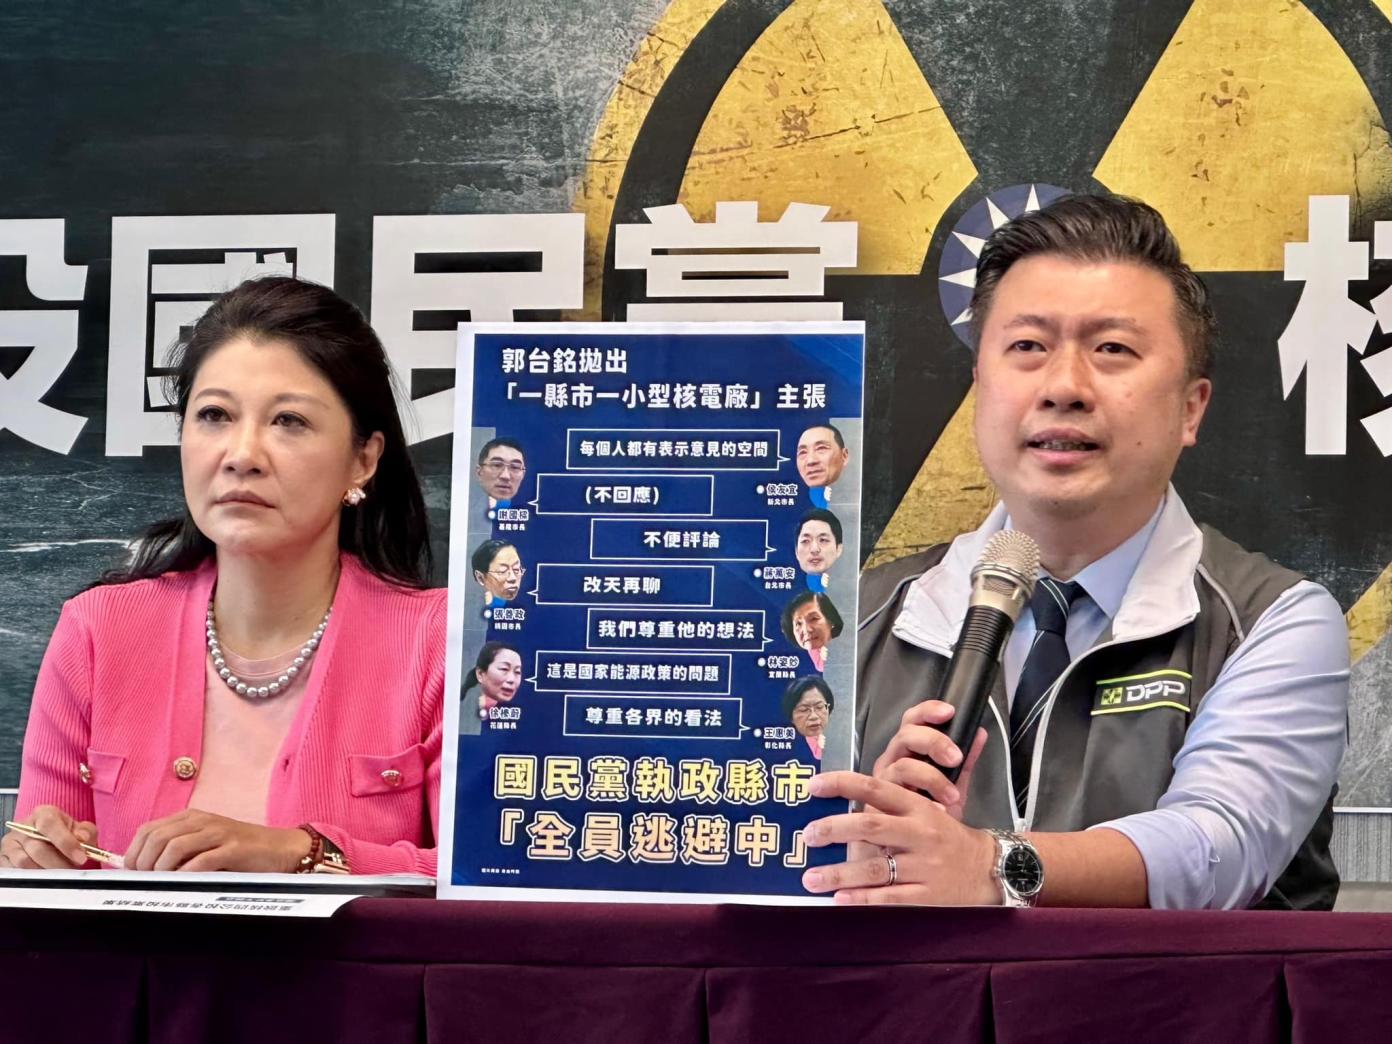 民進黨發言人張志豪(右)表示將以徐巧芯標準全面檢視國民黨立委候選人論文。翻攝張志豪臉書